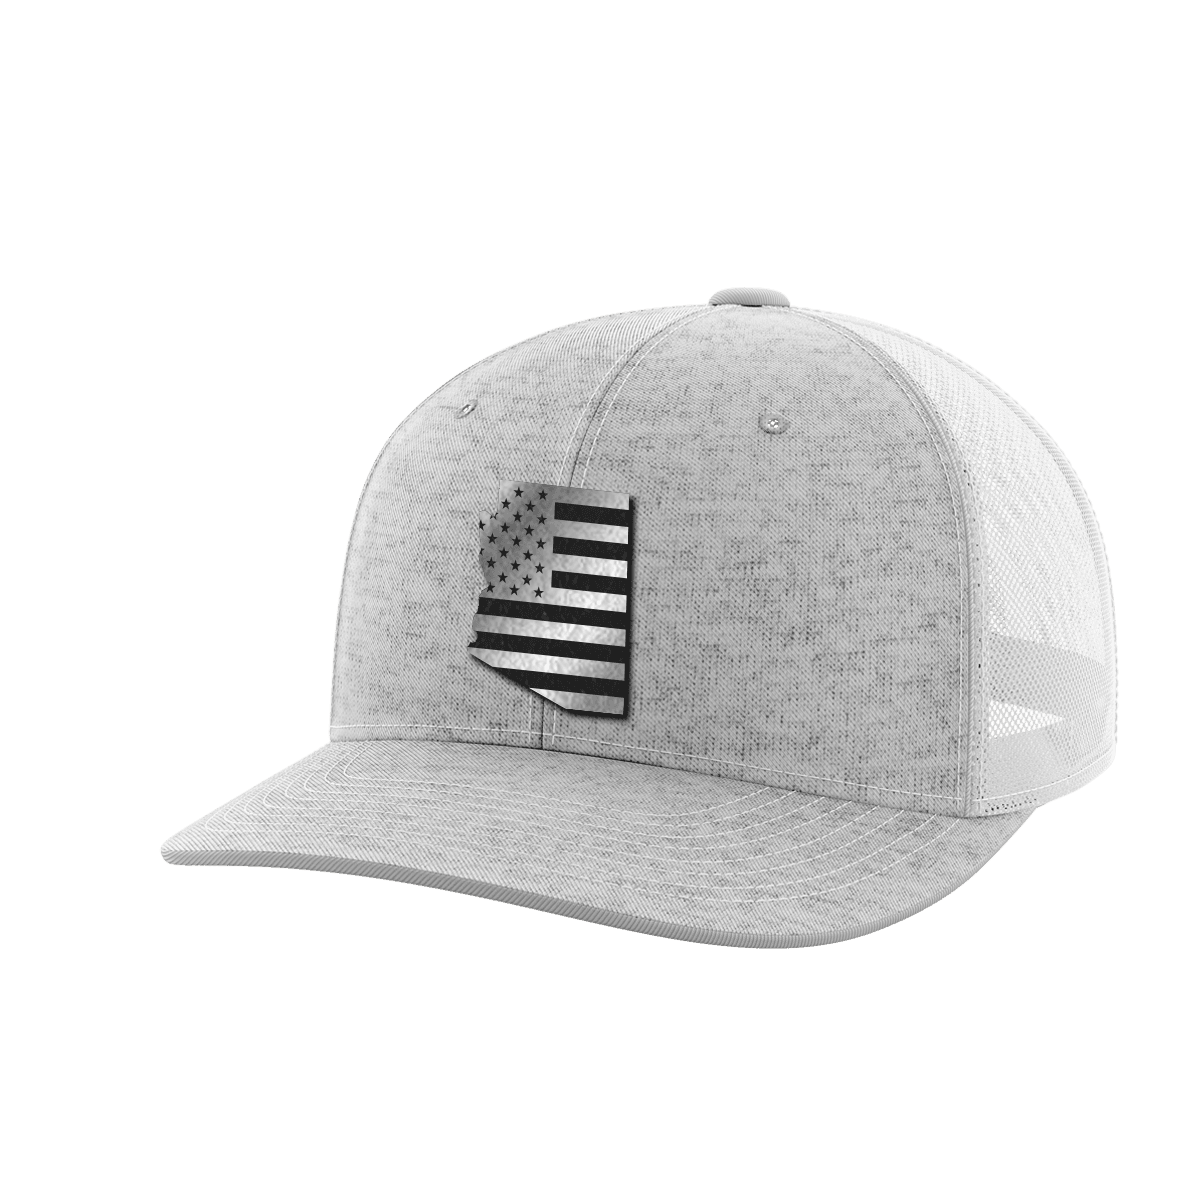 Arizona United Hats - Greater Half